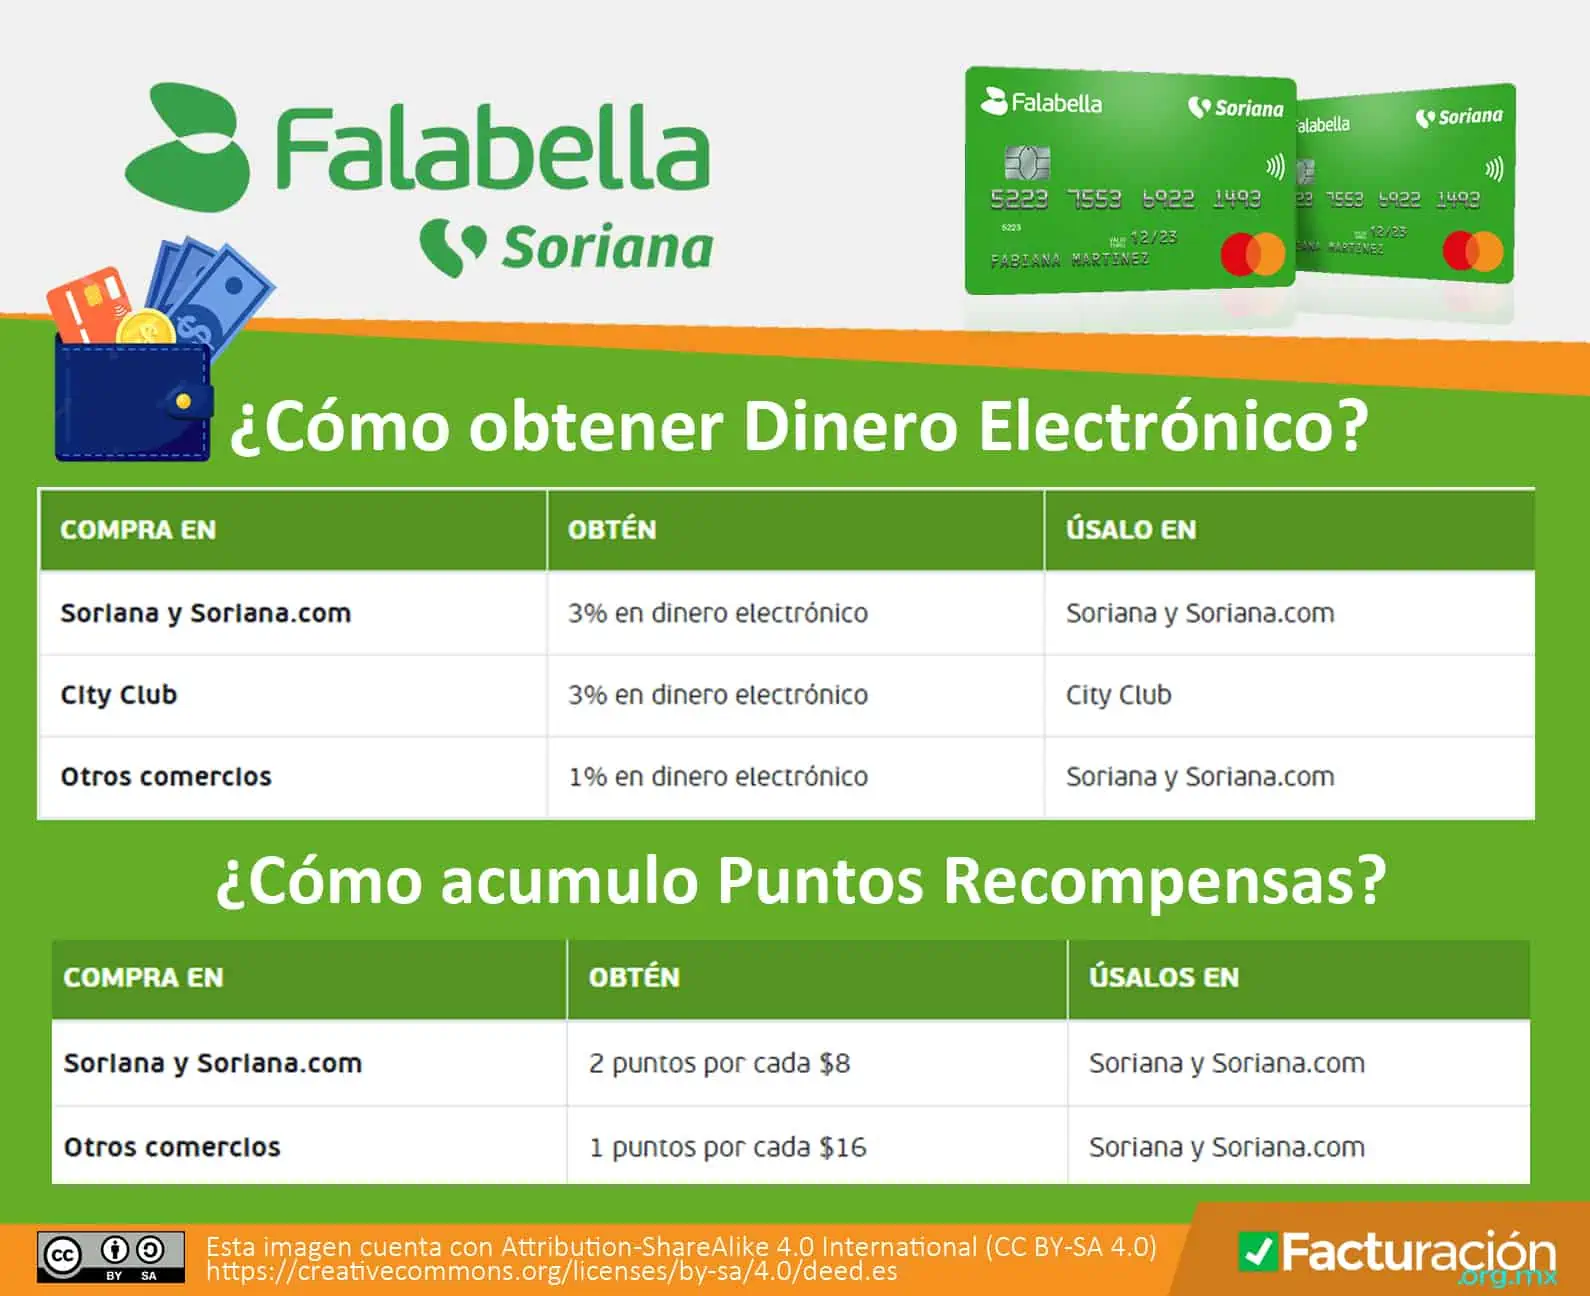 Tarjeta Falabella Soriana. Cómo obtener dinero electrónico. Cómo acumulo puntos recompensas